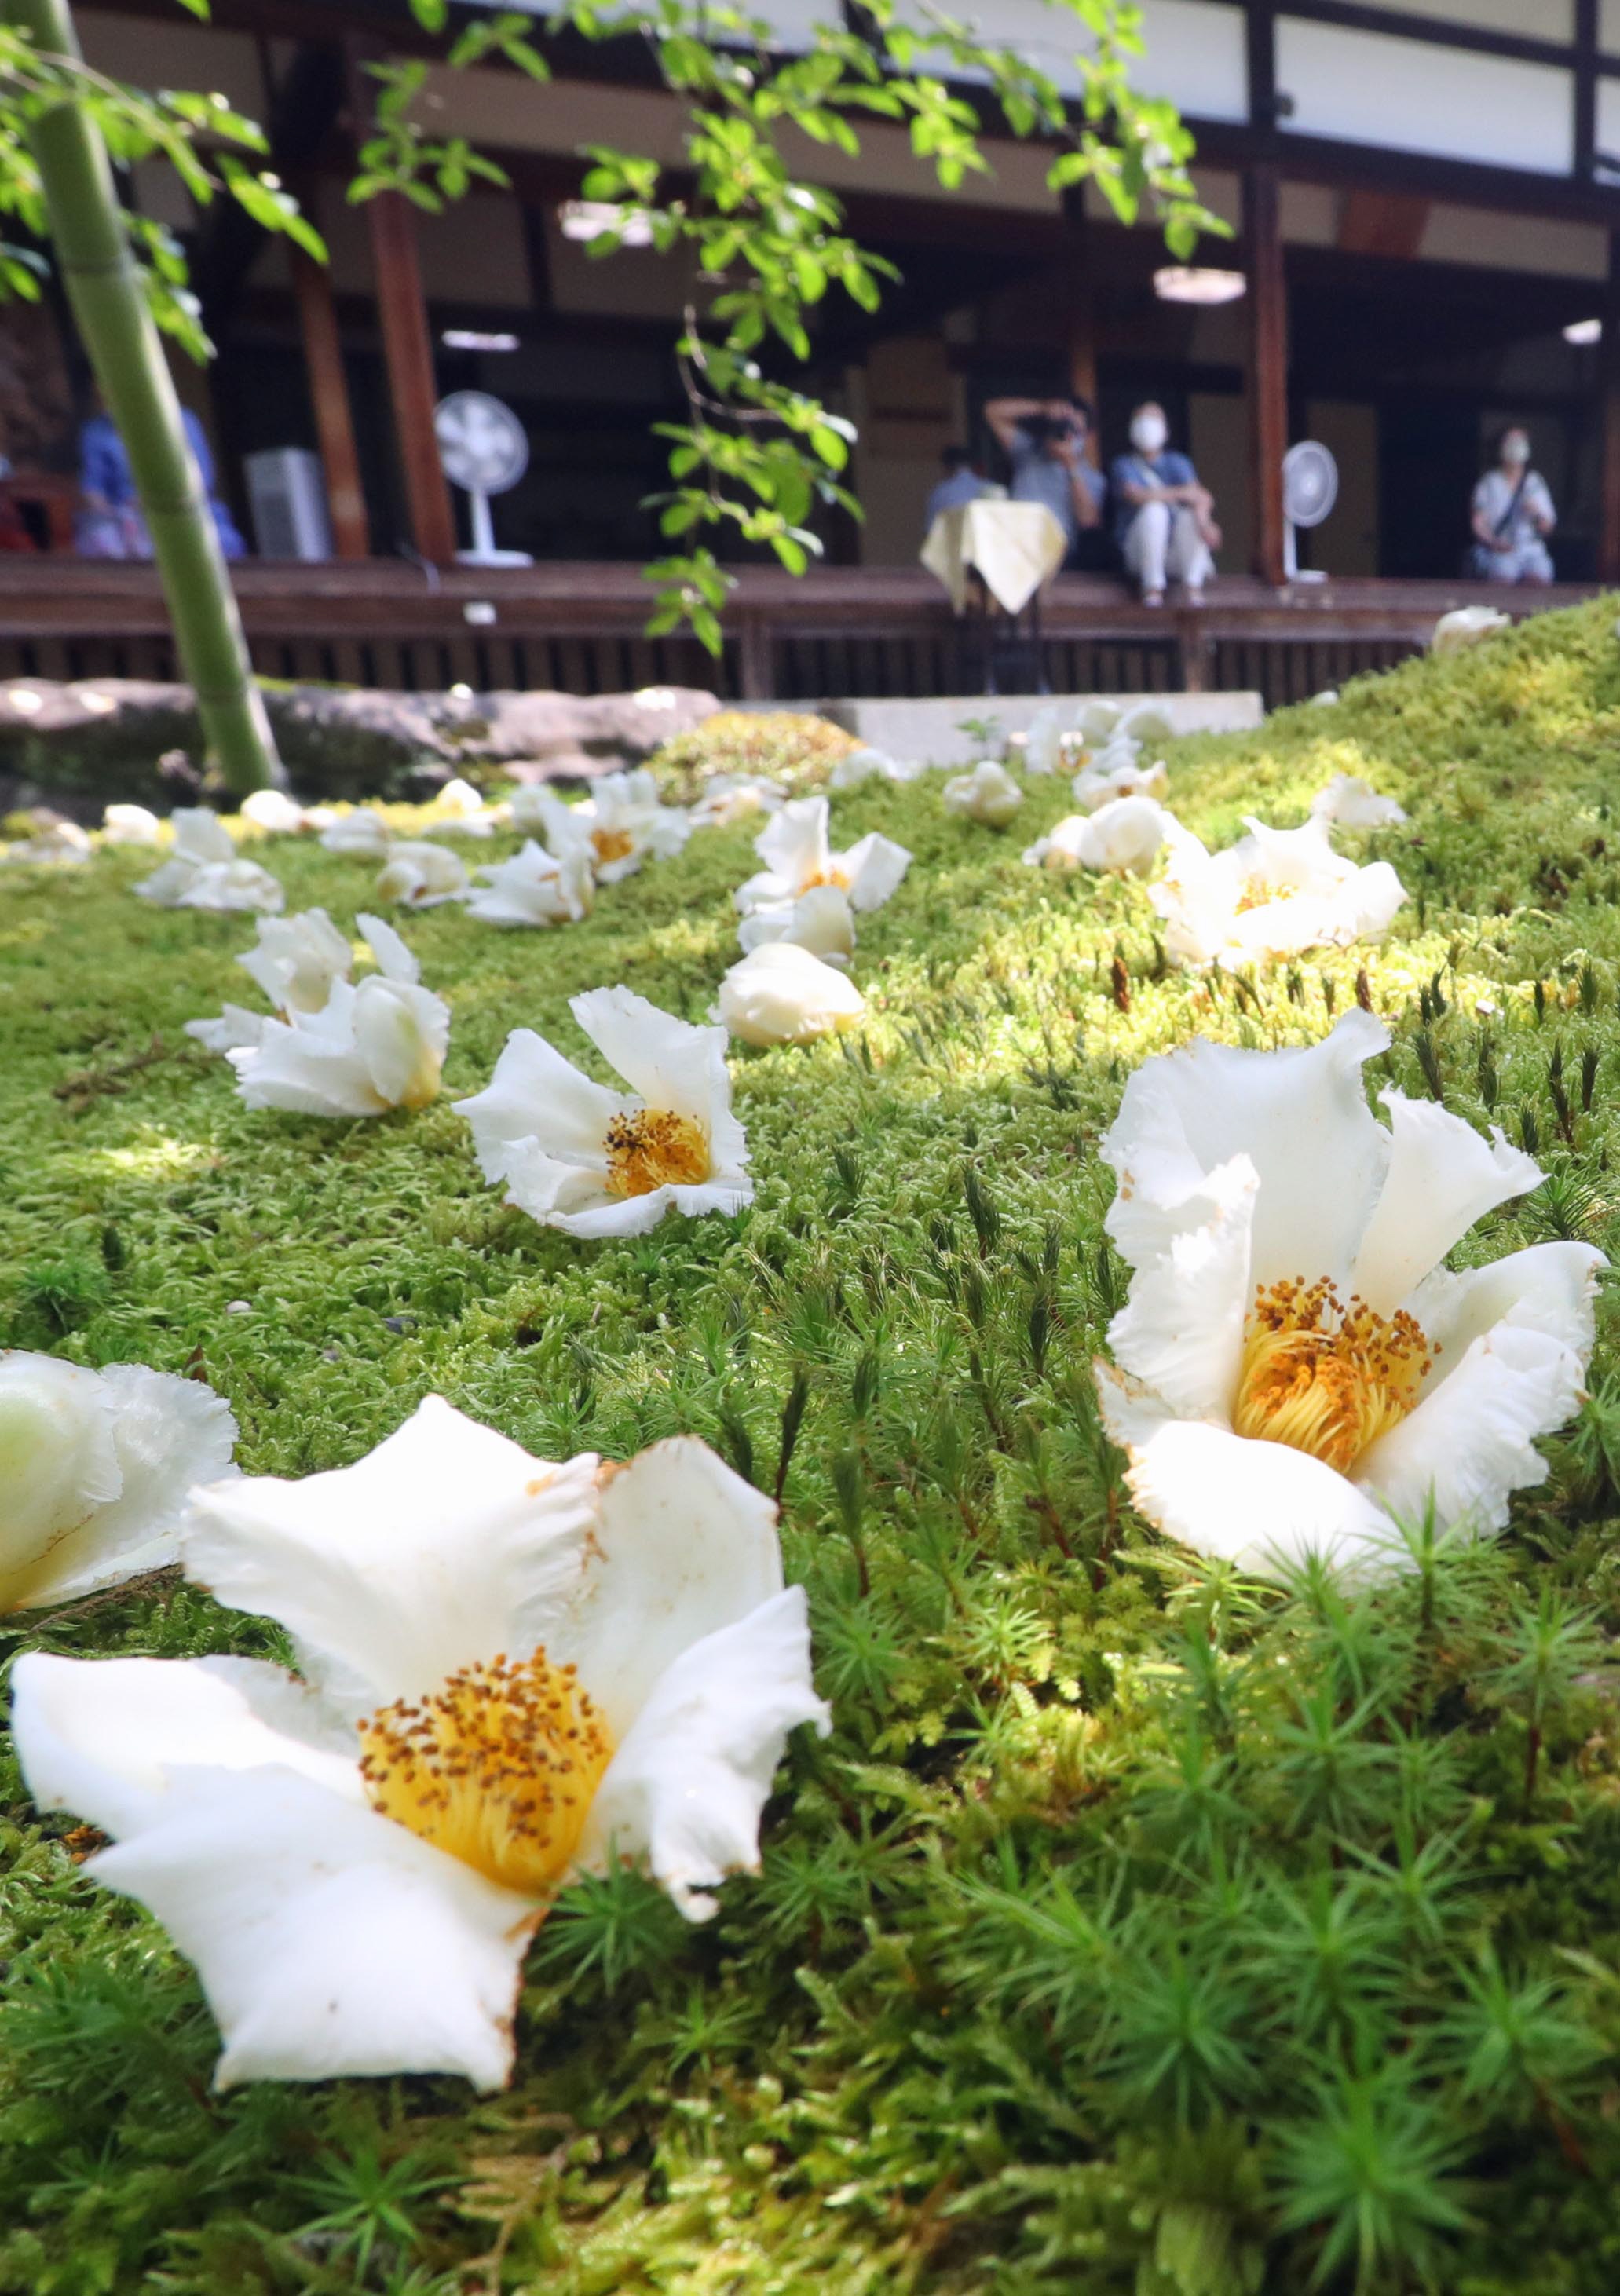 沙羅の花に世の無常重ね 京都 東林院で愛でる会始まる 産経ニュース